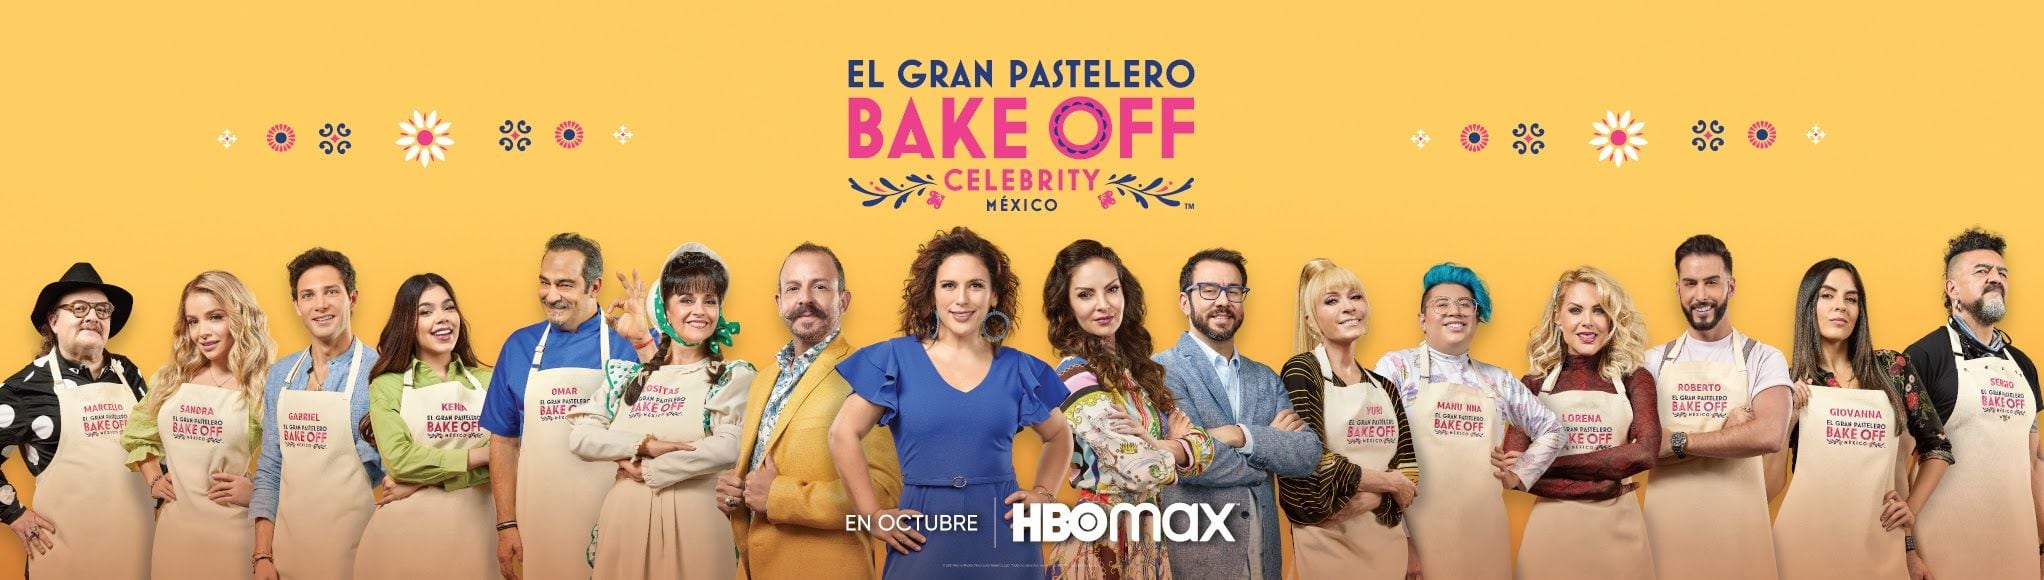 El Gran Pastelero Bake Off celebrity México (Foto: HBO MAX)